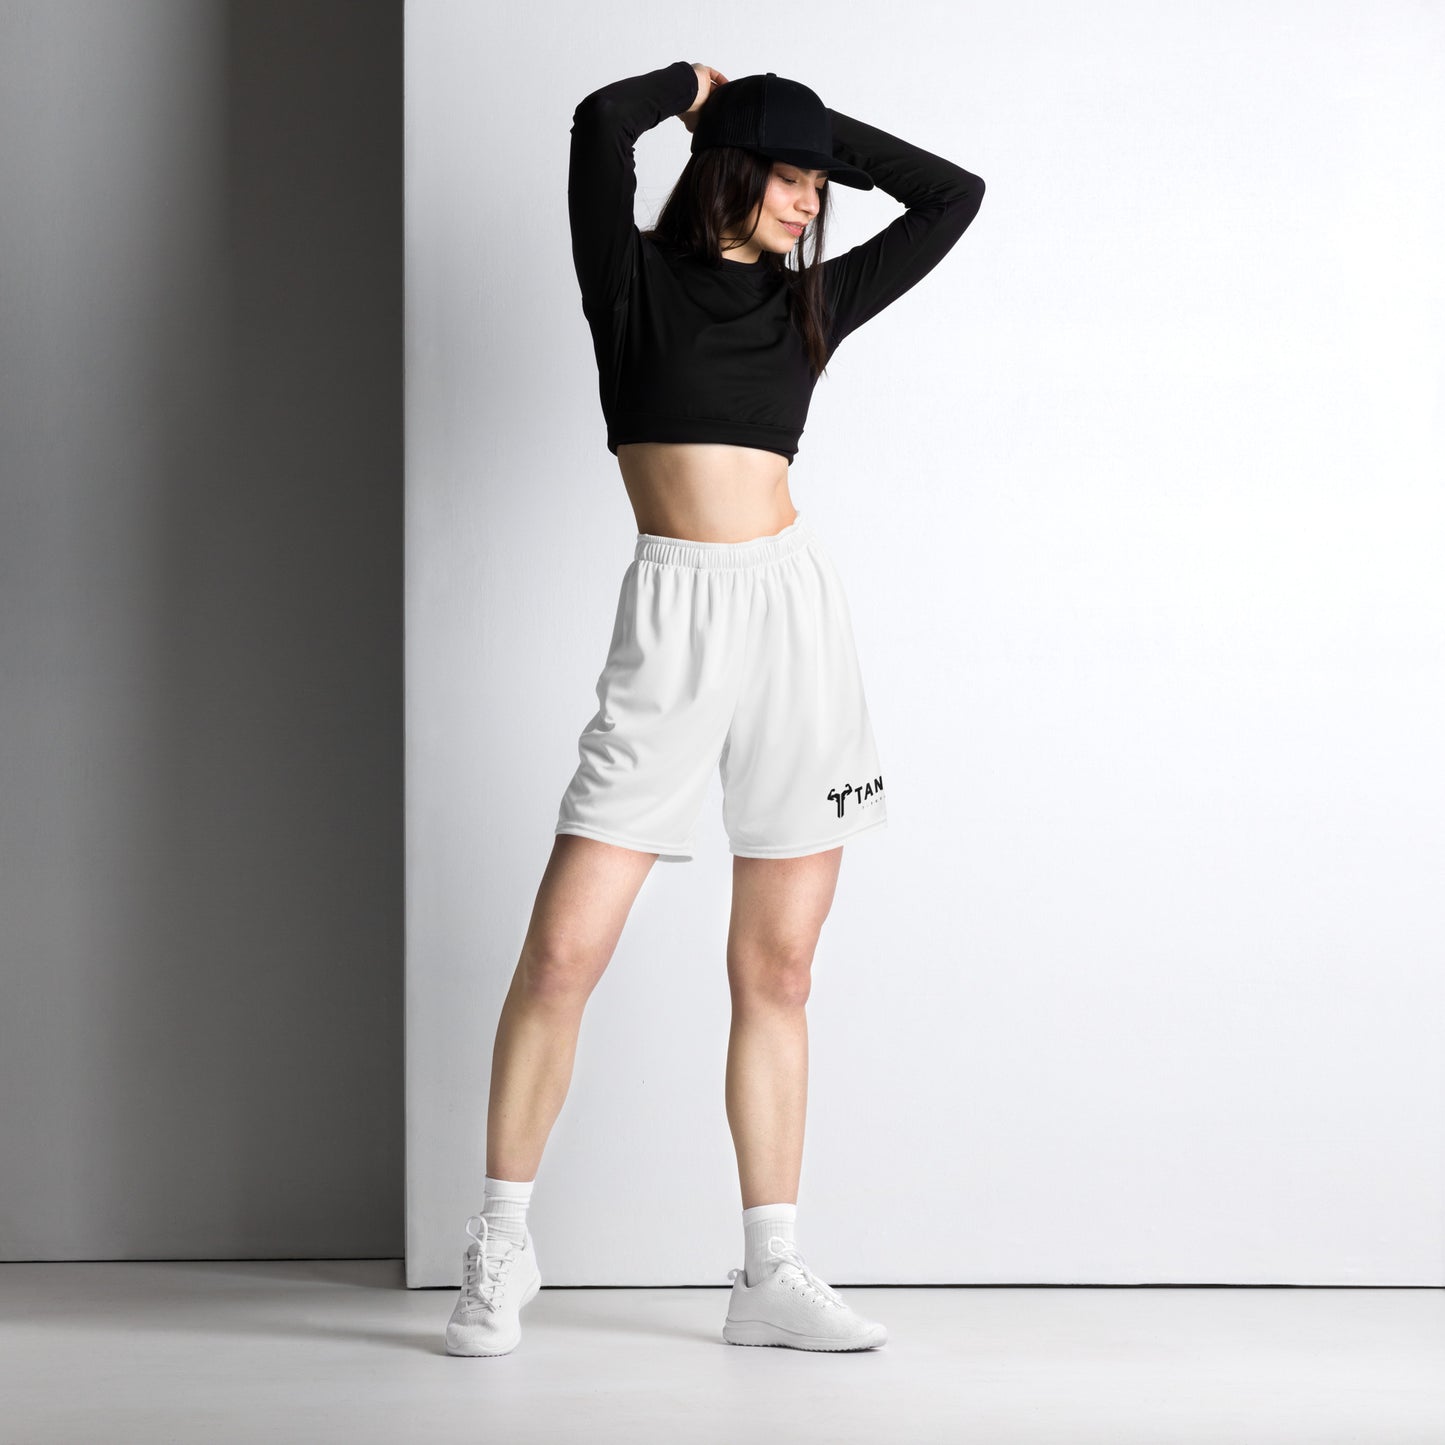 Shorts Fitness Feminino - Dry Fit